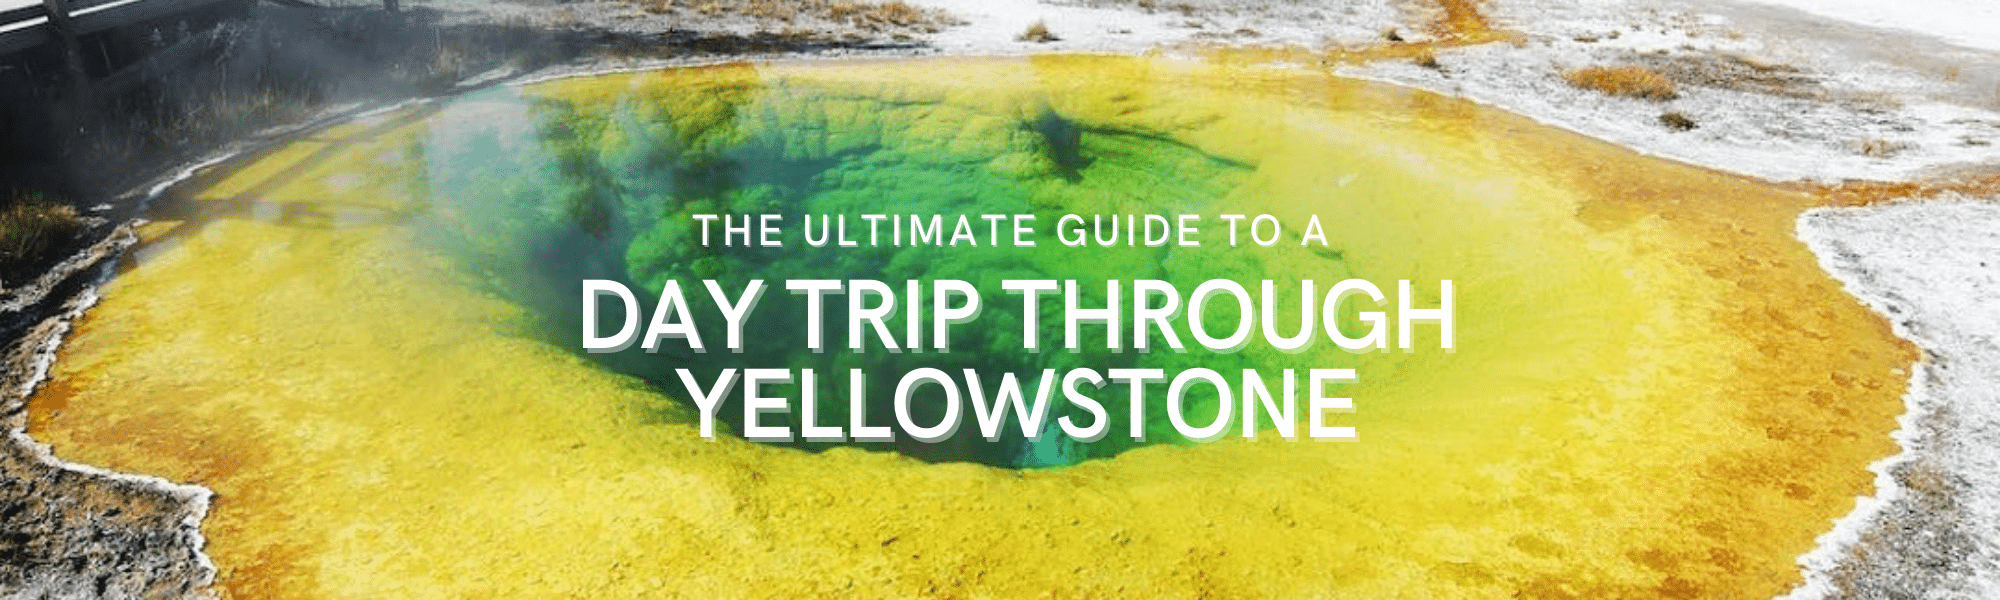 Day Trip Through Yellowstone